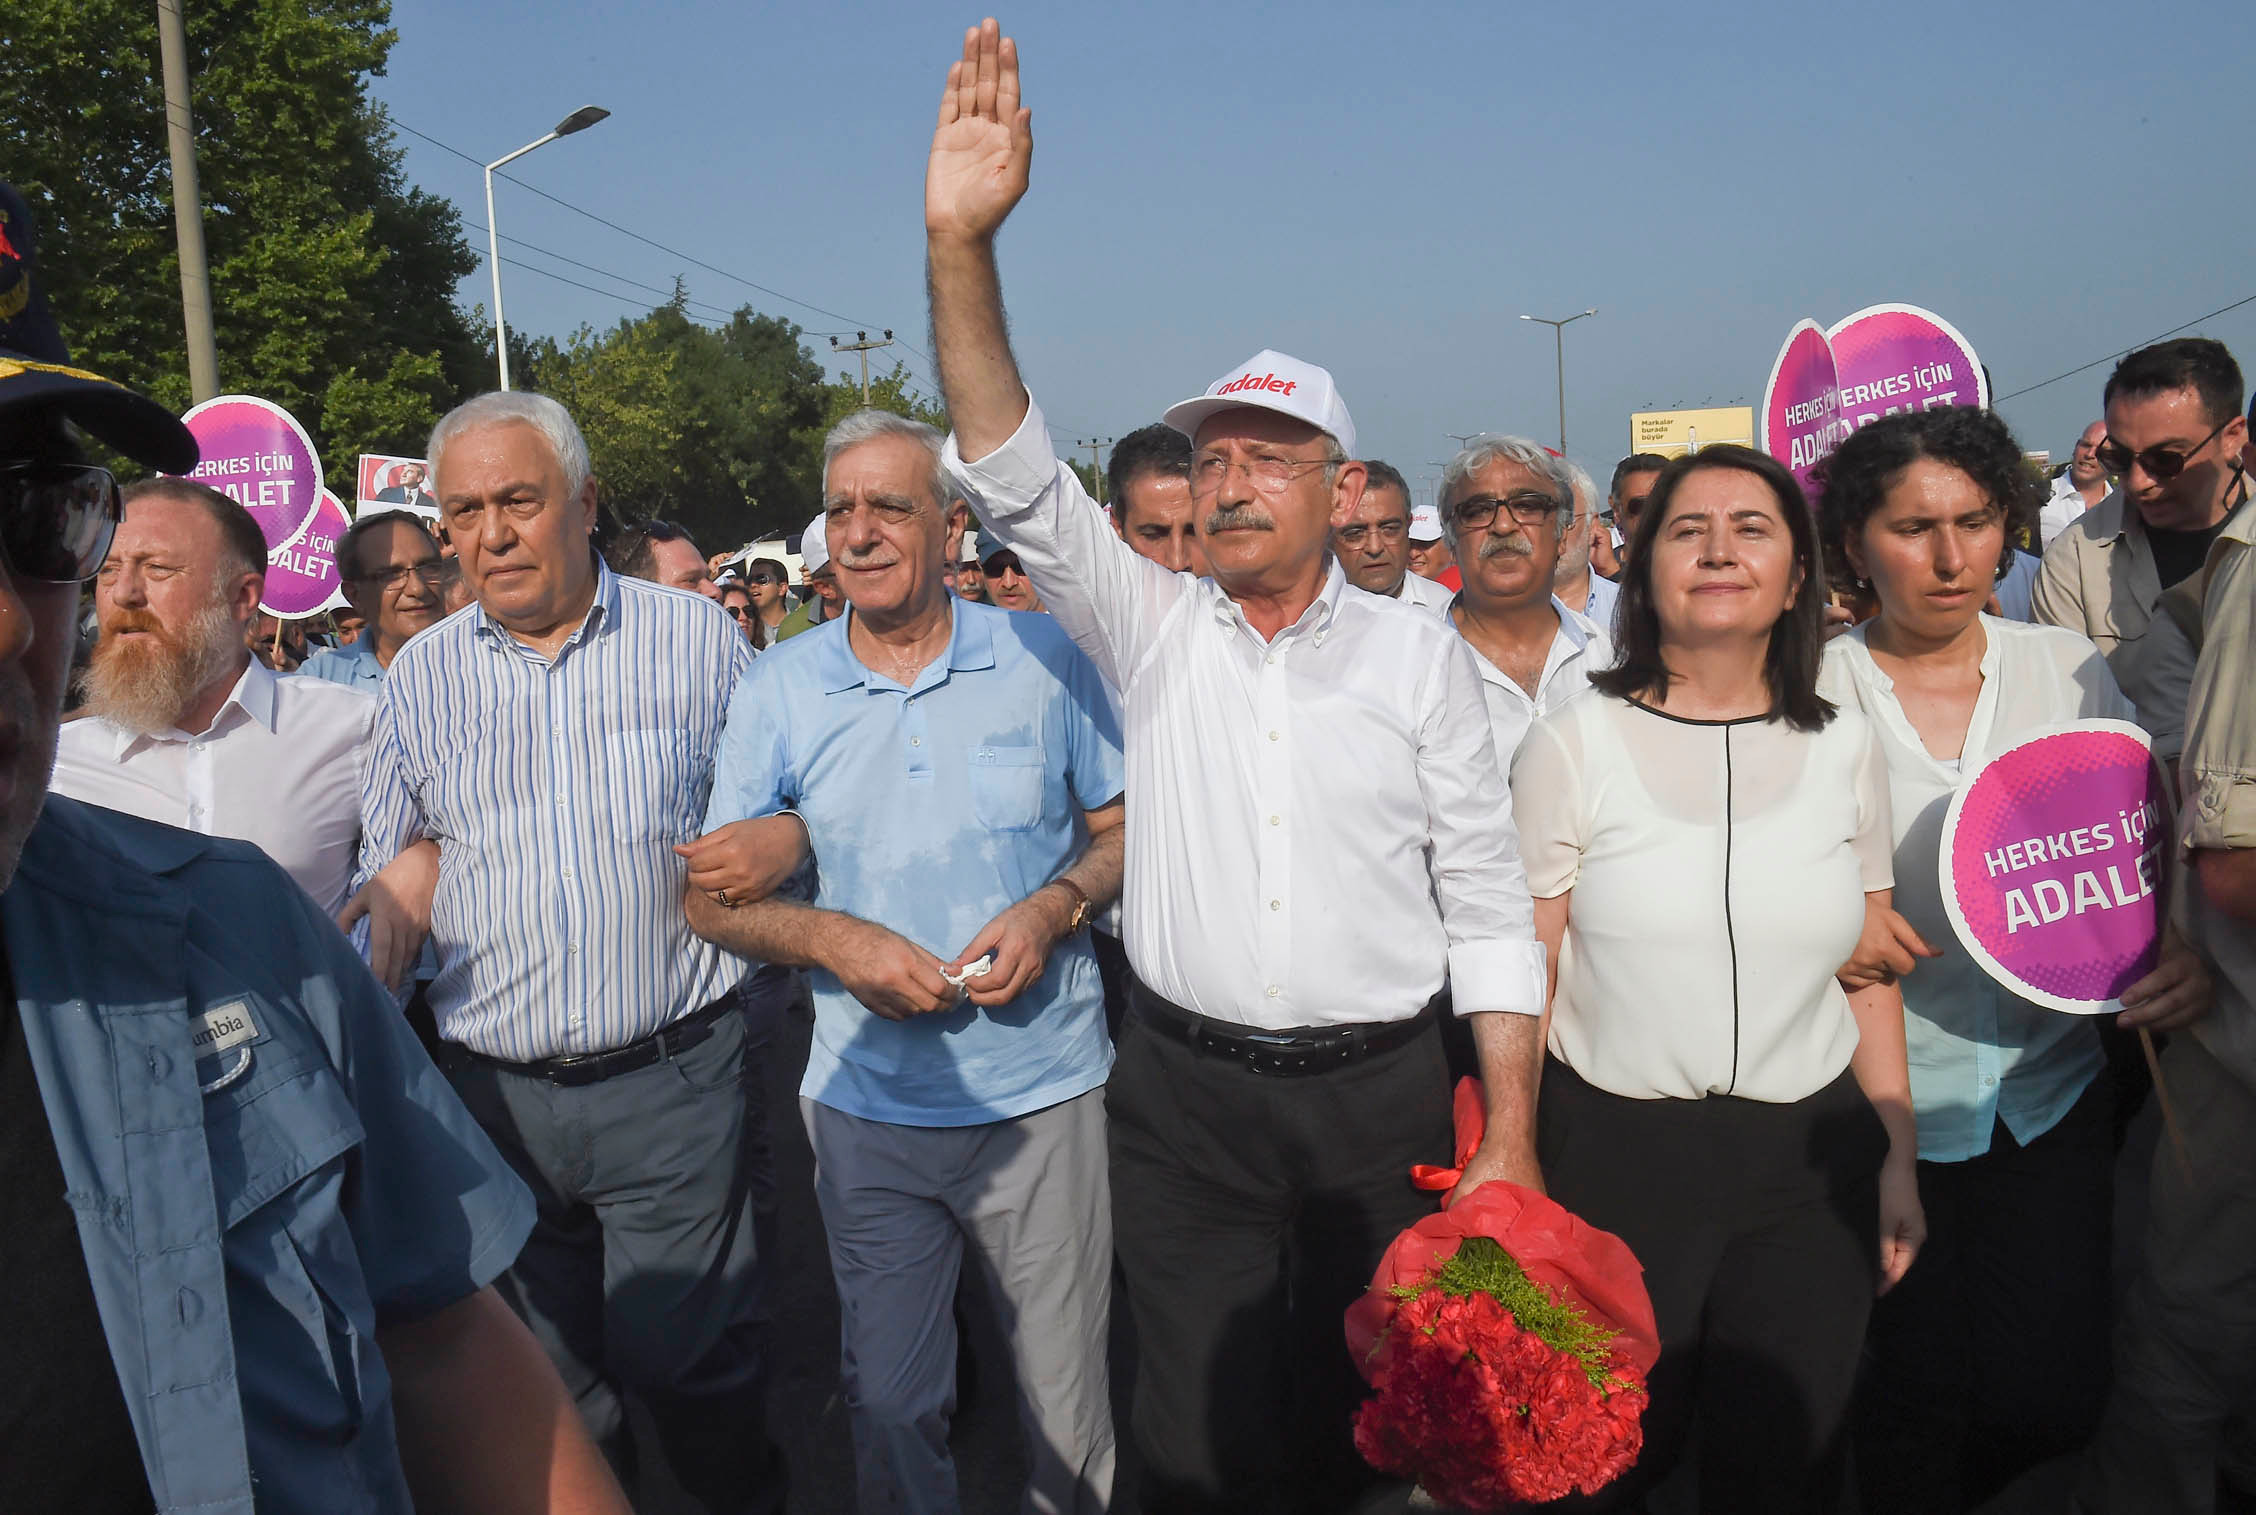 CHP'li muhalifler Kılıçdaroğlu'na karşı adalet yürüyüşüne başlıyor